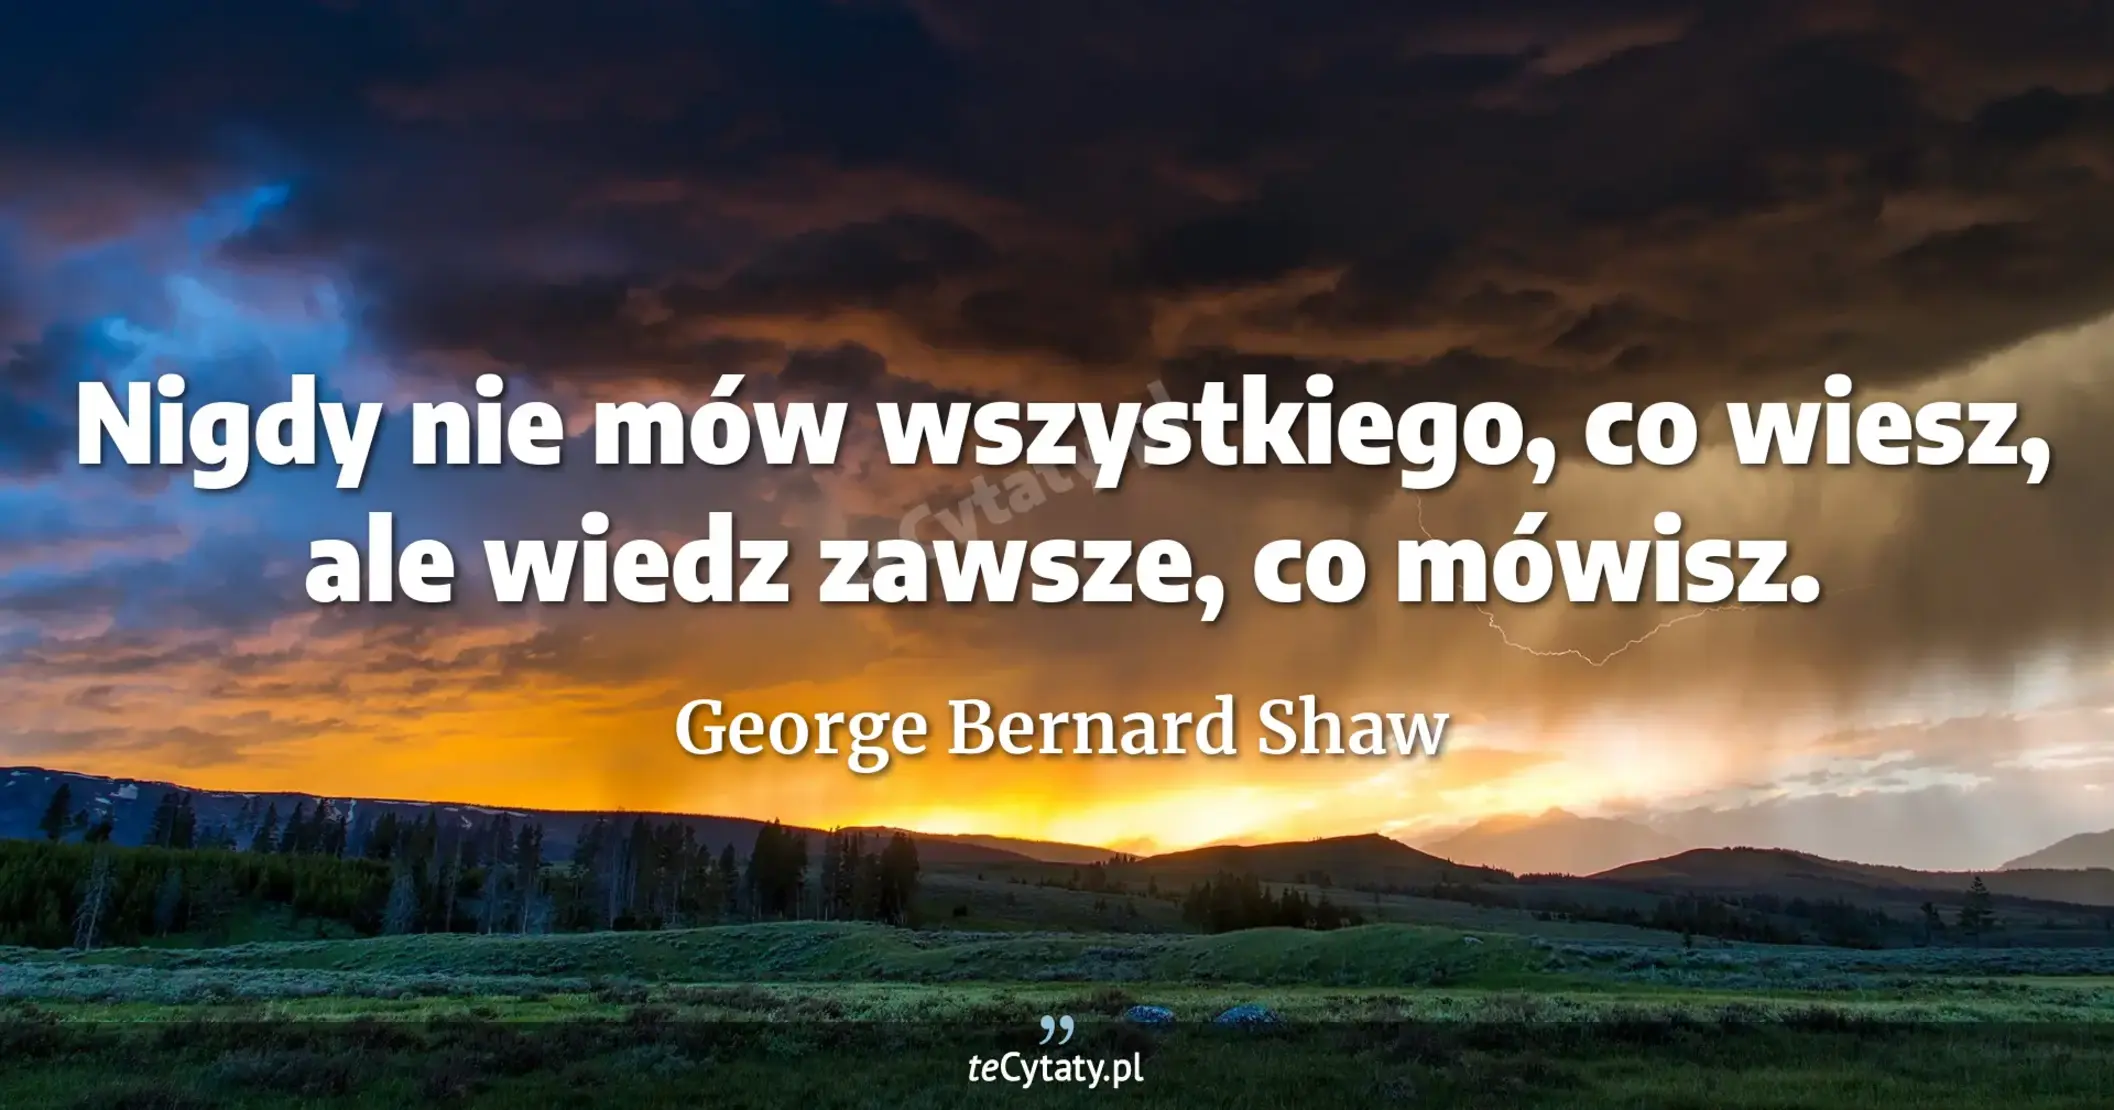 Nigdy nie mów wszystkiego, co wiesz, ale wiedz zawsze, co mówisz. - George Bernard Shaw